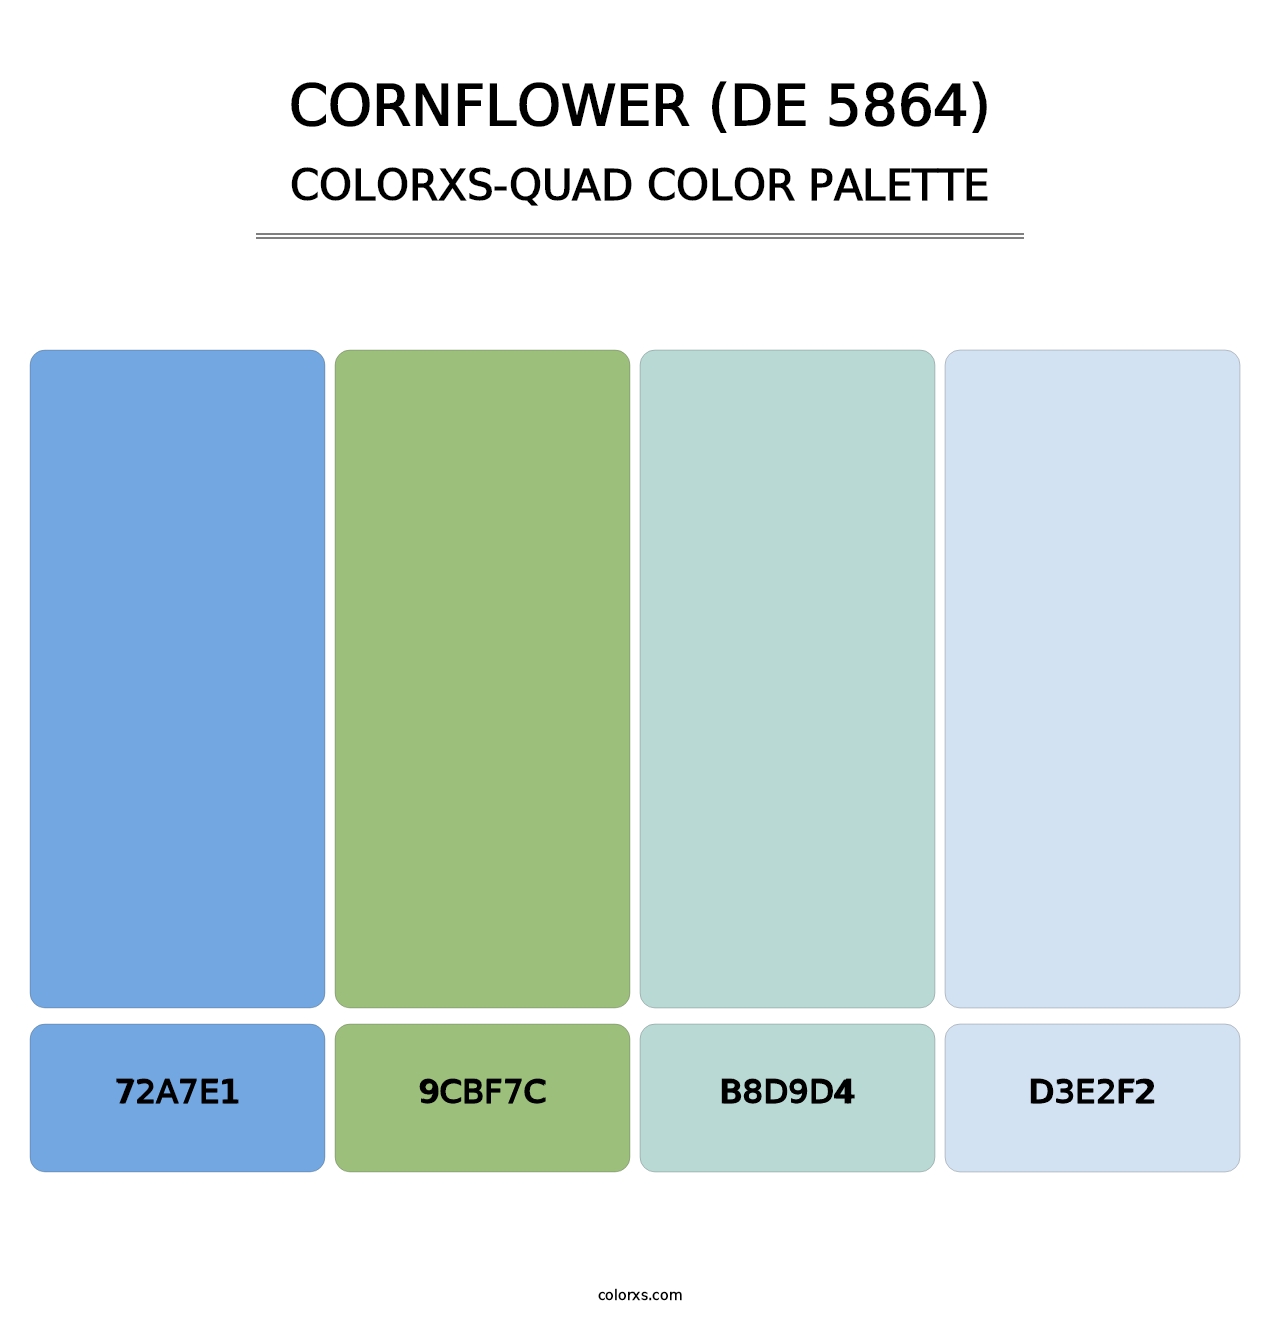 Cornflower (DE 5864) - Colorxs Quad Palette